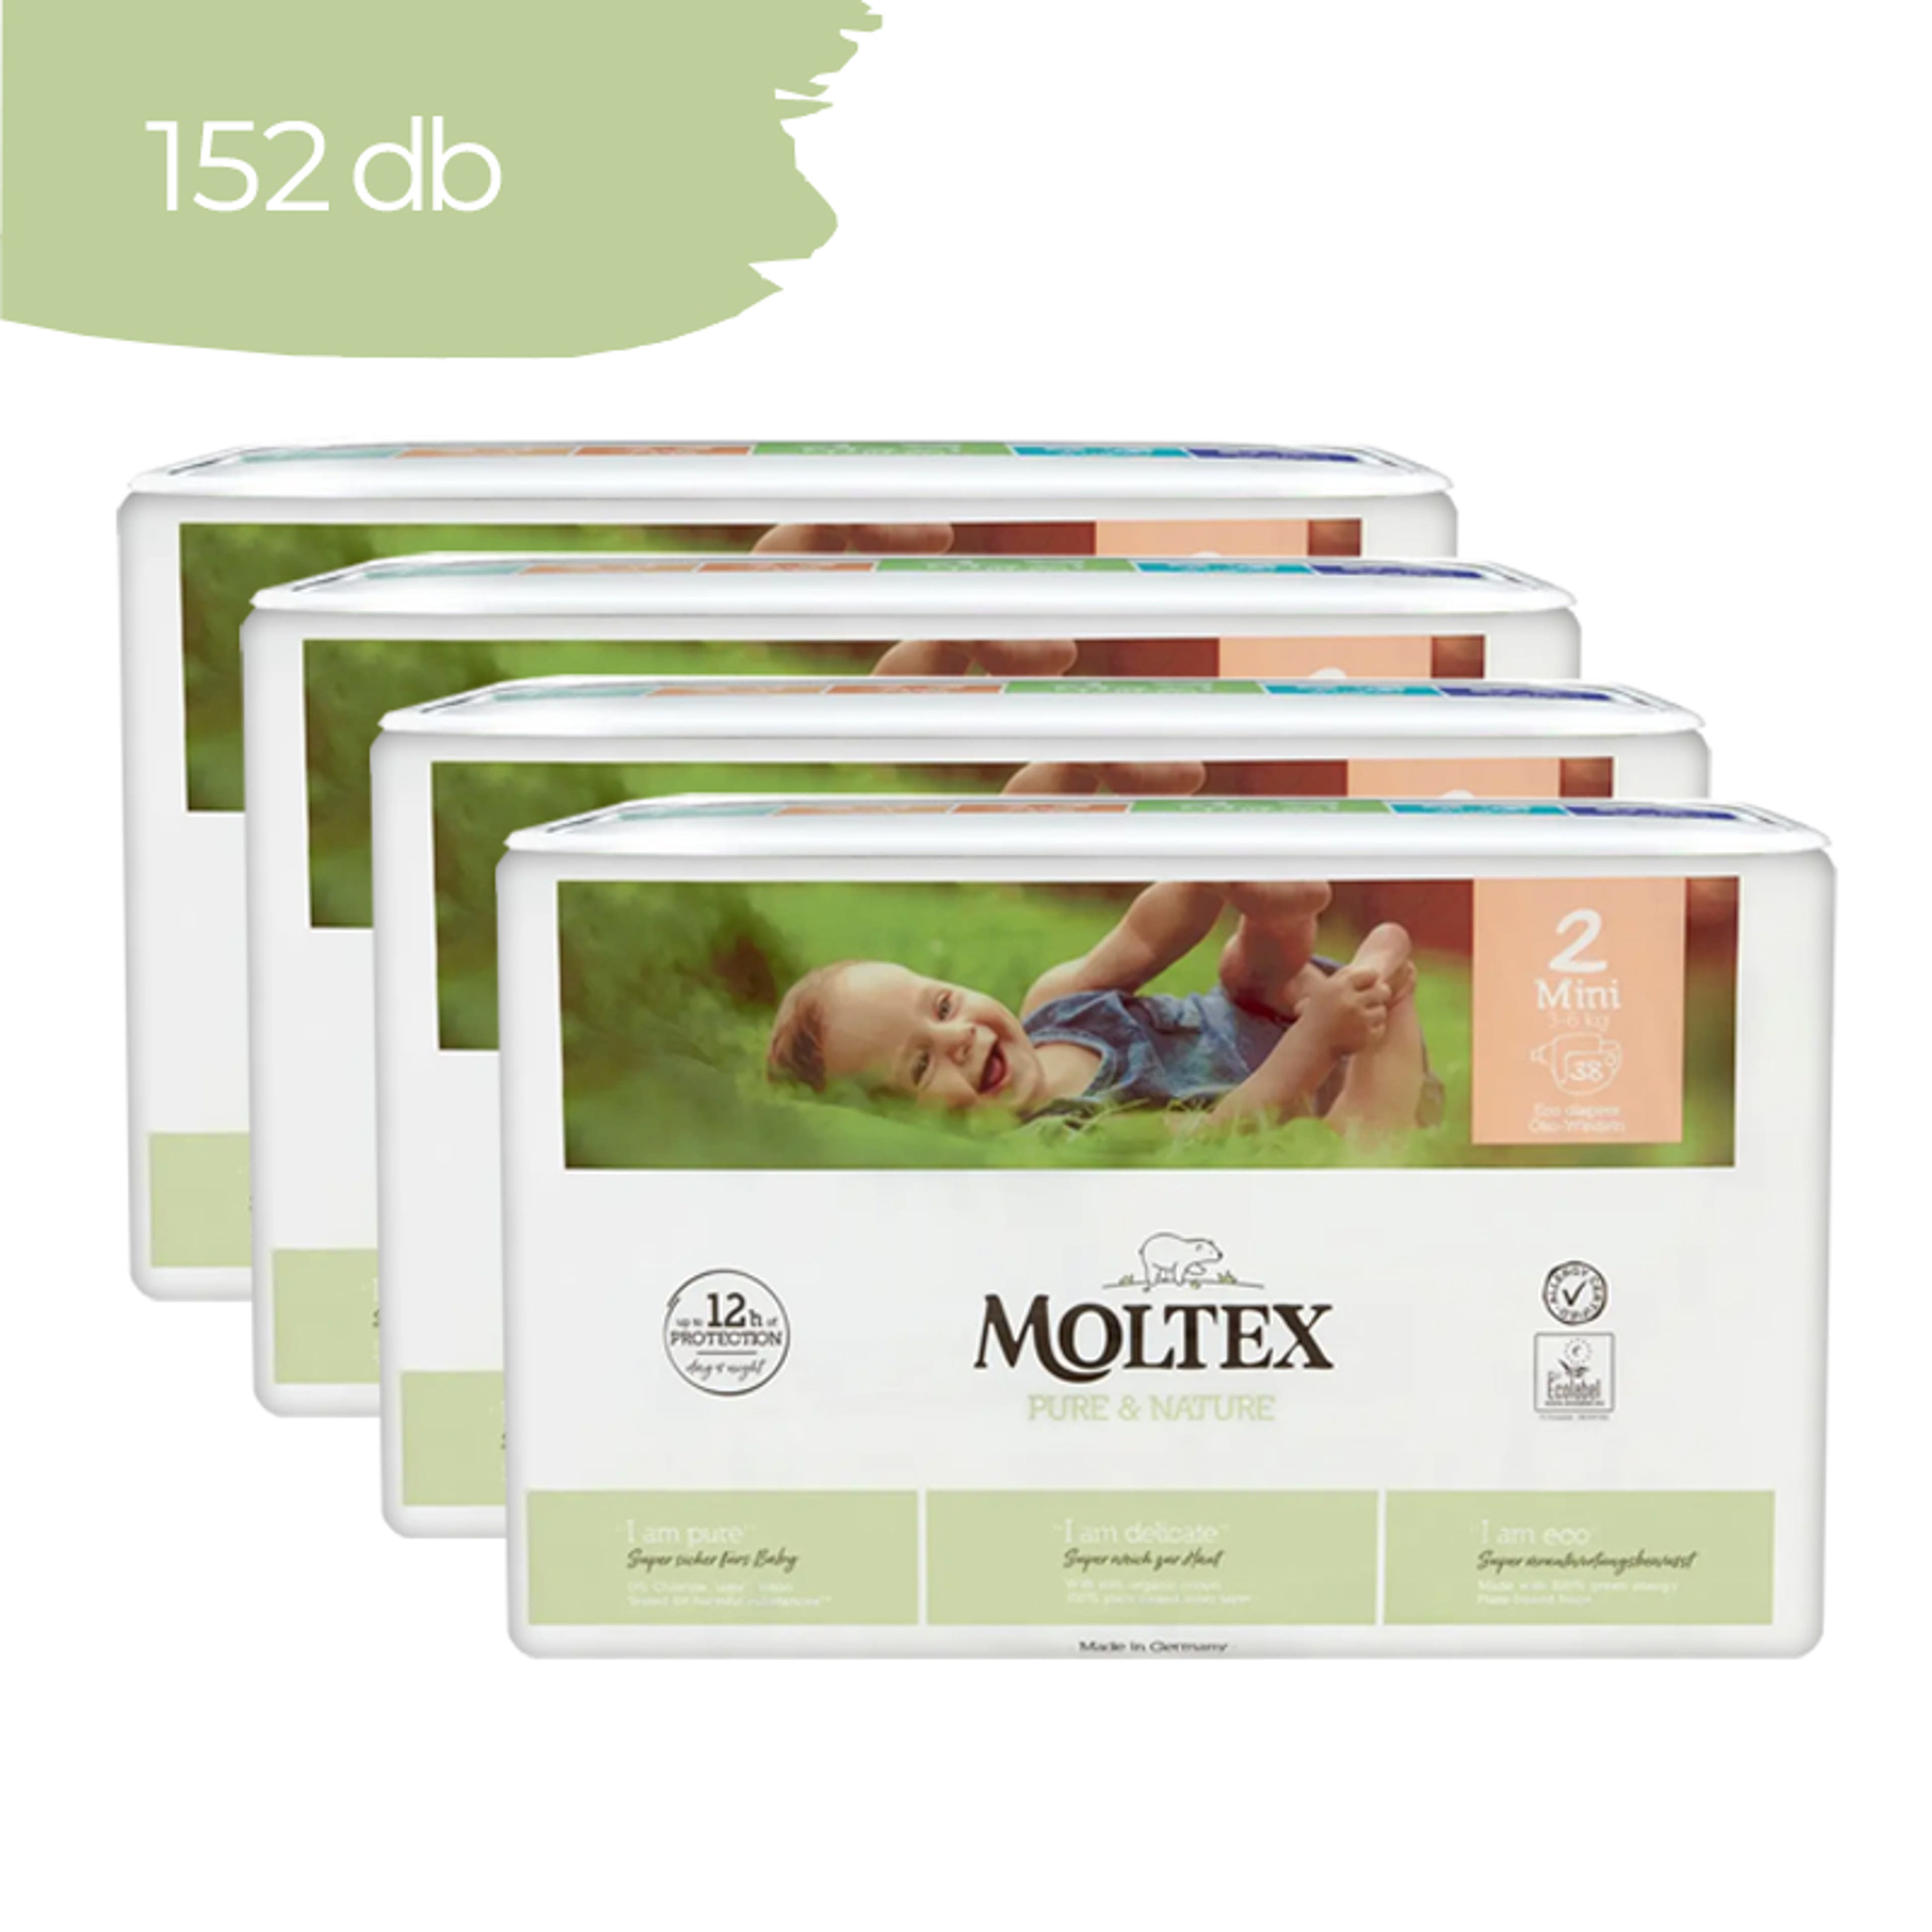 Moltex Pure & Nature Mini öko pelenka 3-6 kg - 152 kg-1